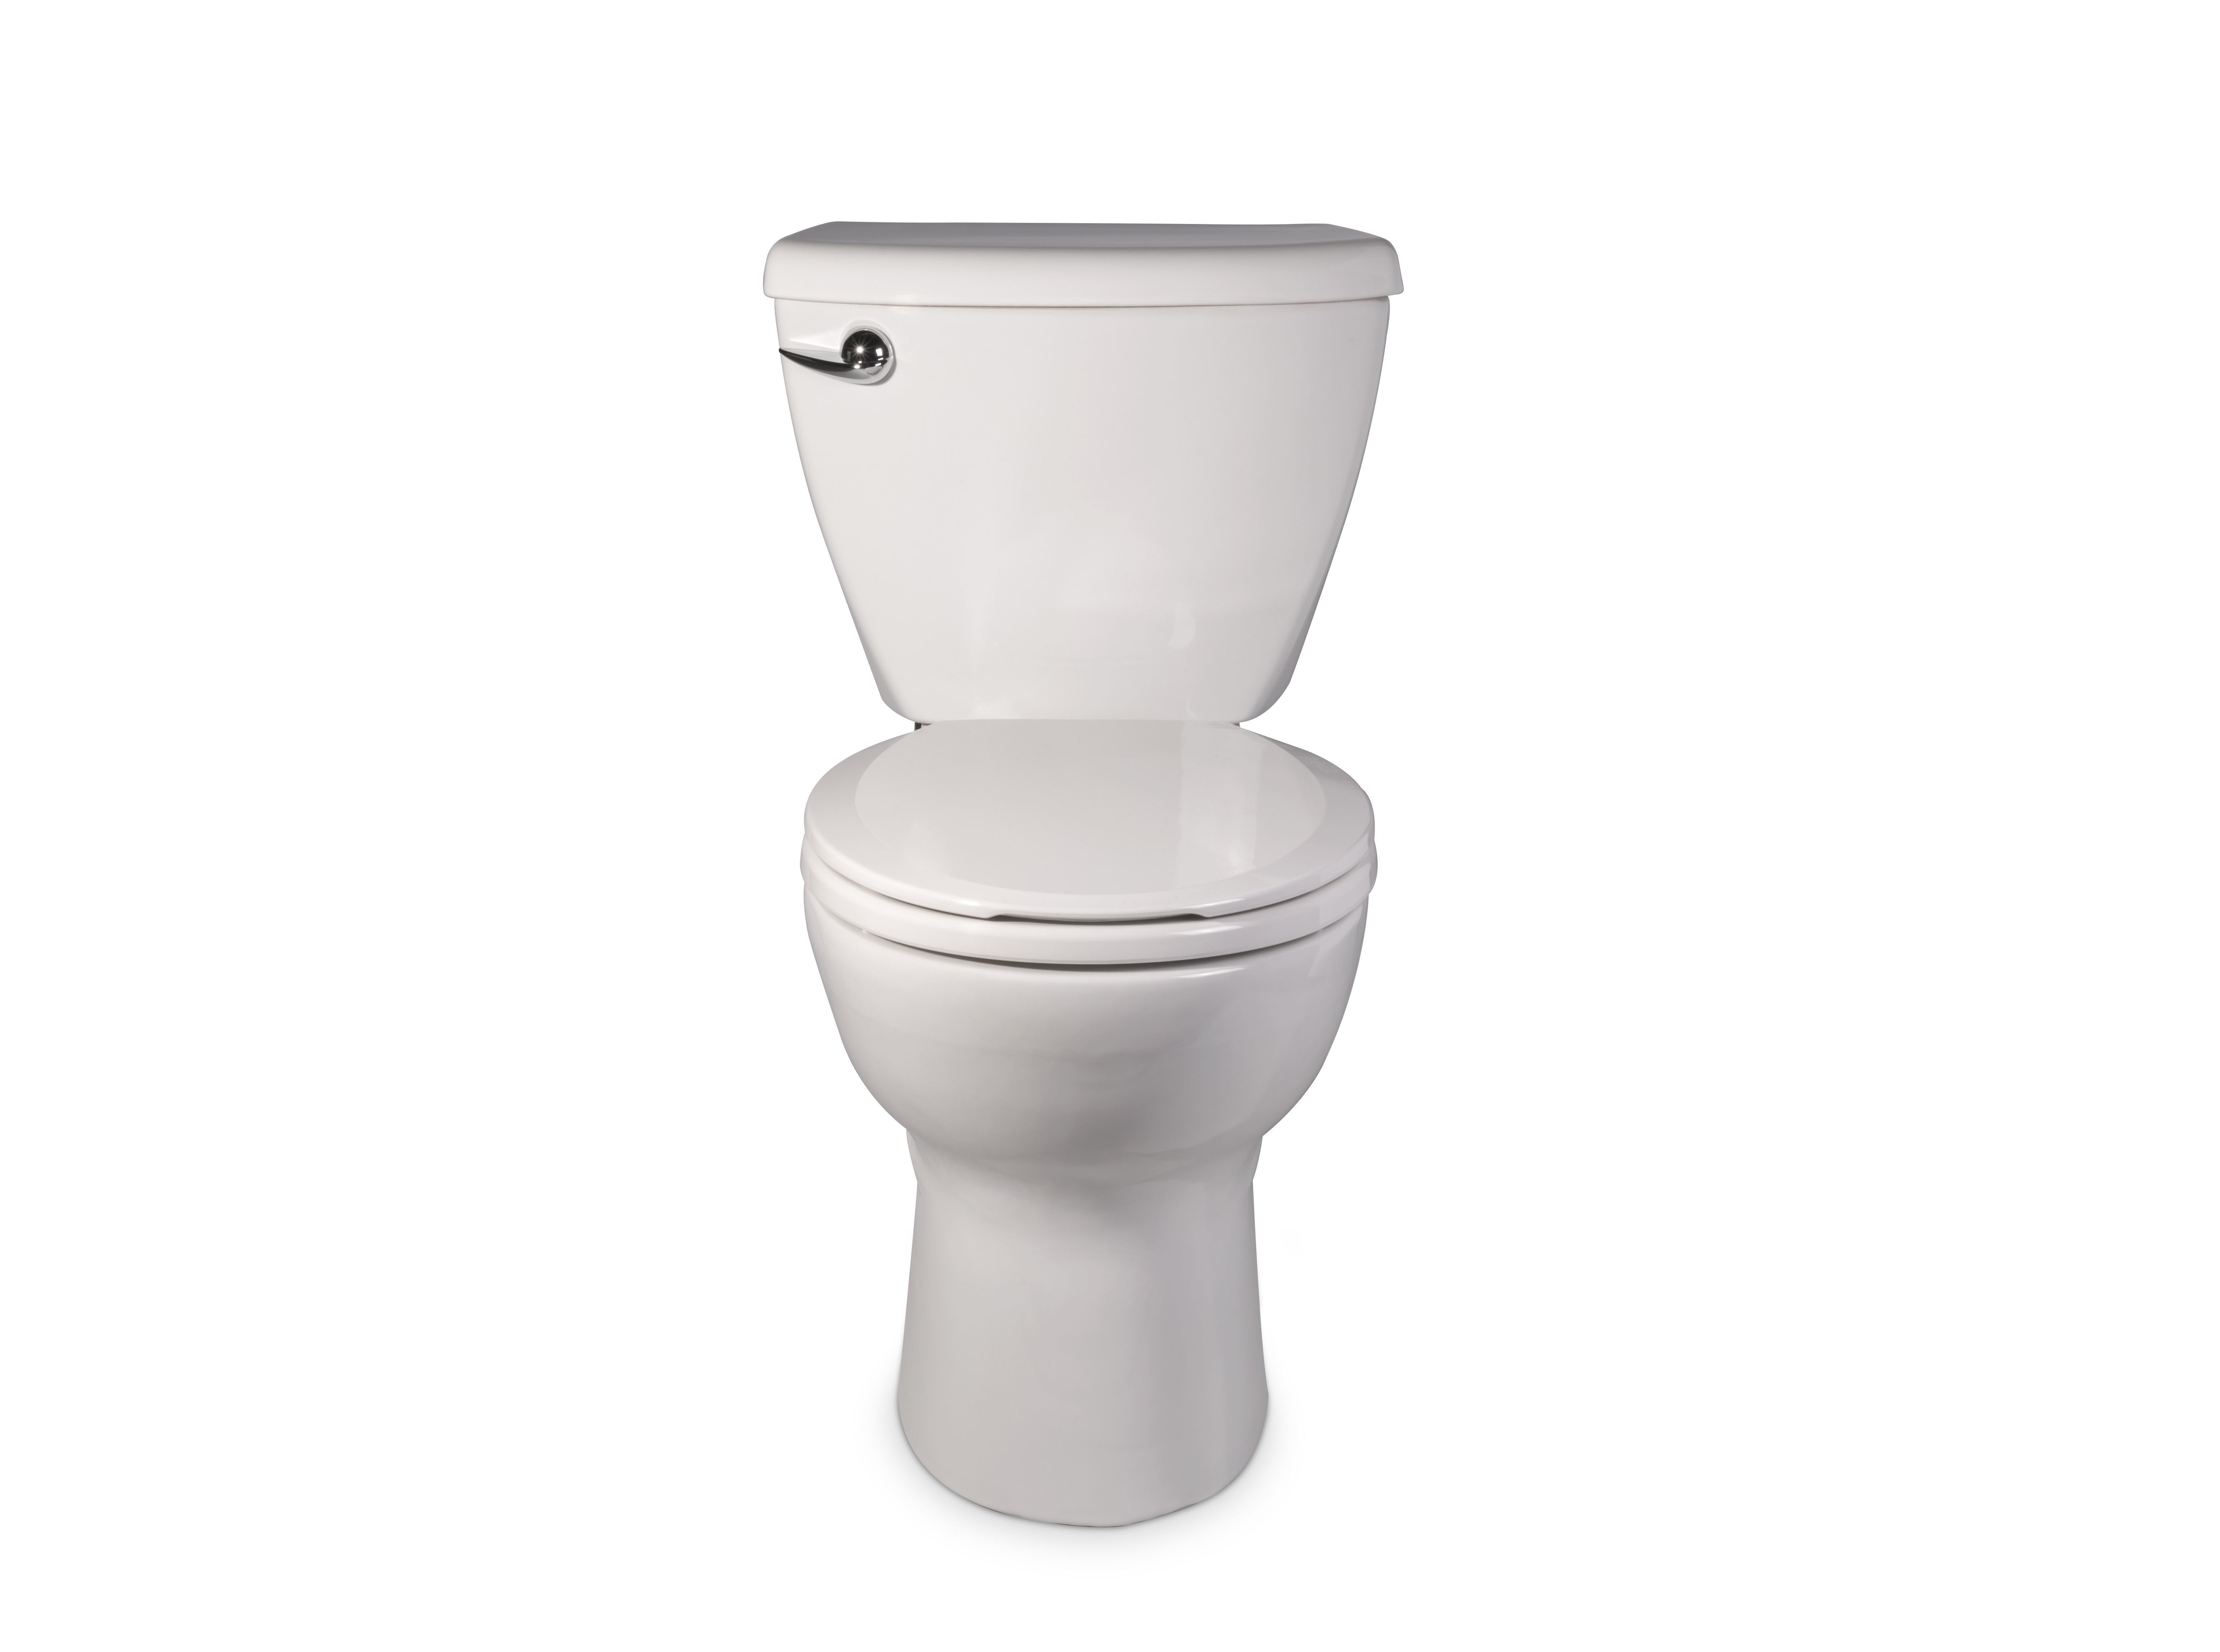 Toilette complète Ravenna 3, 2 pièces, 1,6 gpc/6,0 lpc, à cuvette au devant rond à hauteur régulière et réservoir avec doublure, avec siège